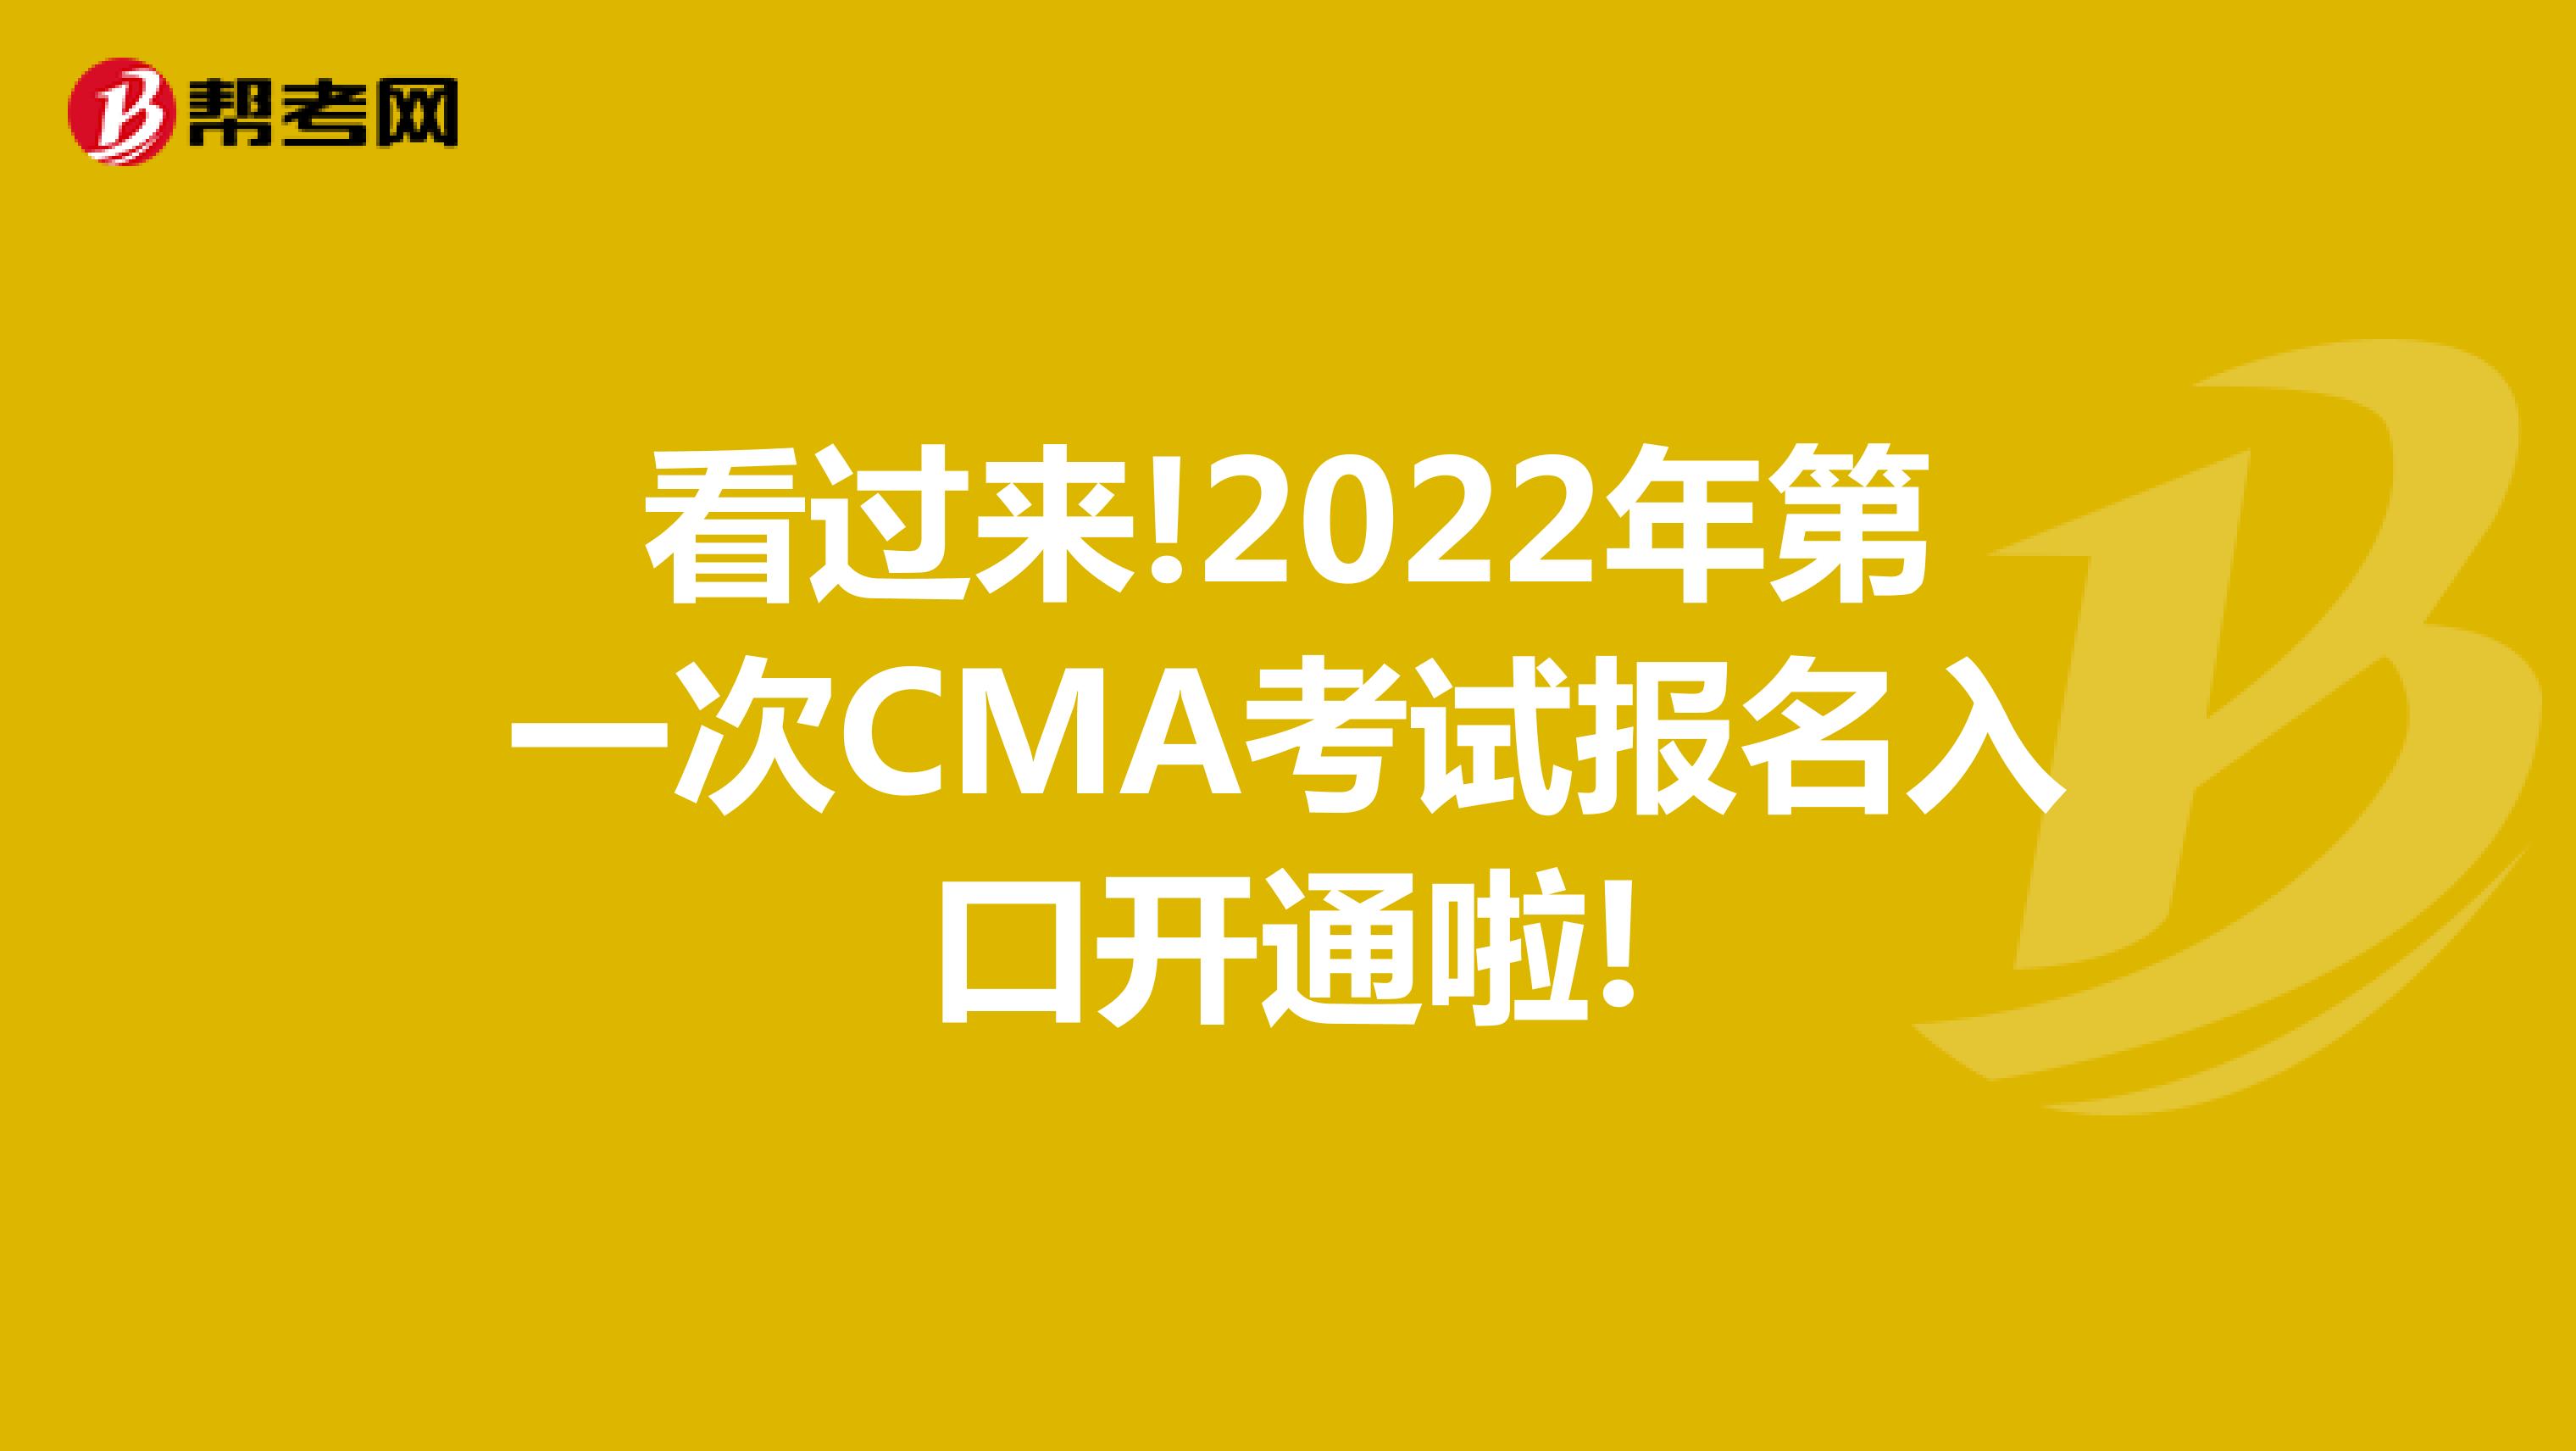 看过来!2022年第一次CMA考试报名入口开通啦!